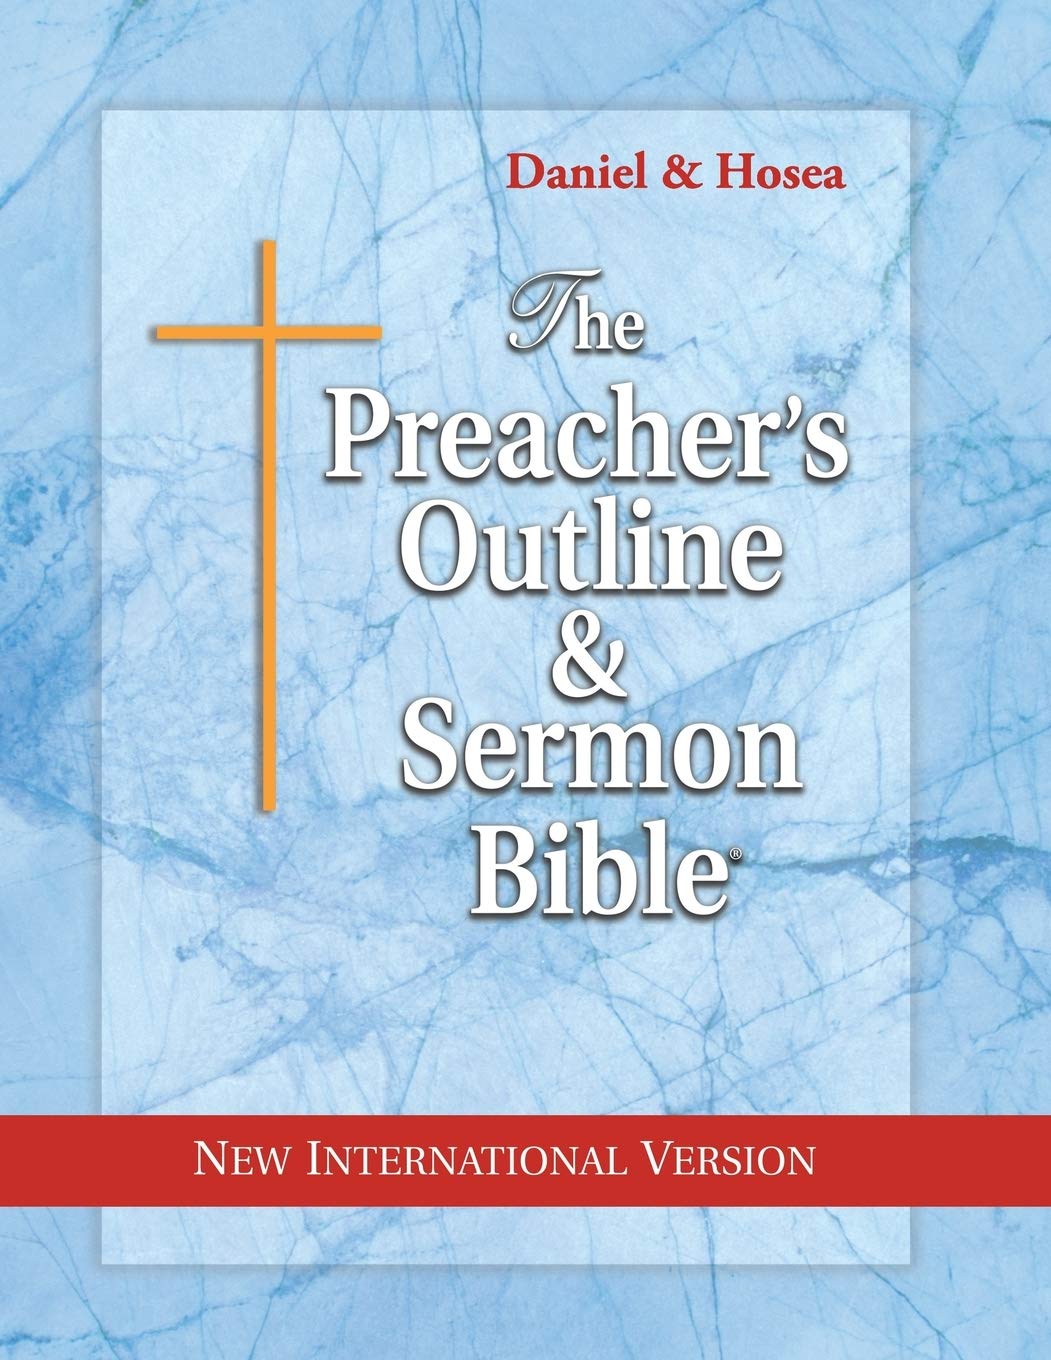 THE PREACHER'S OUTLINE & SERMON BIBLE